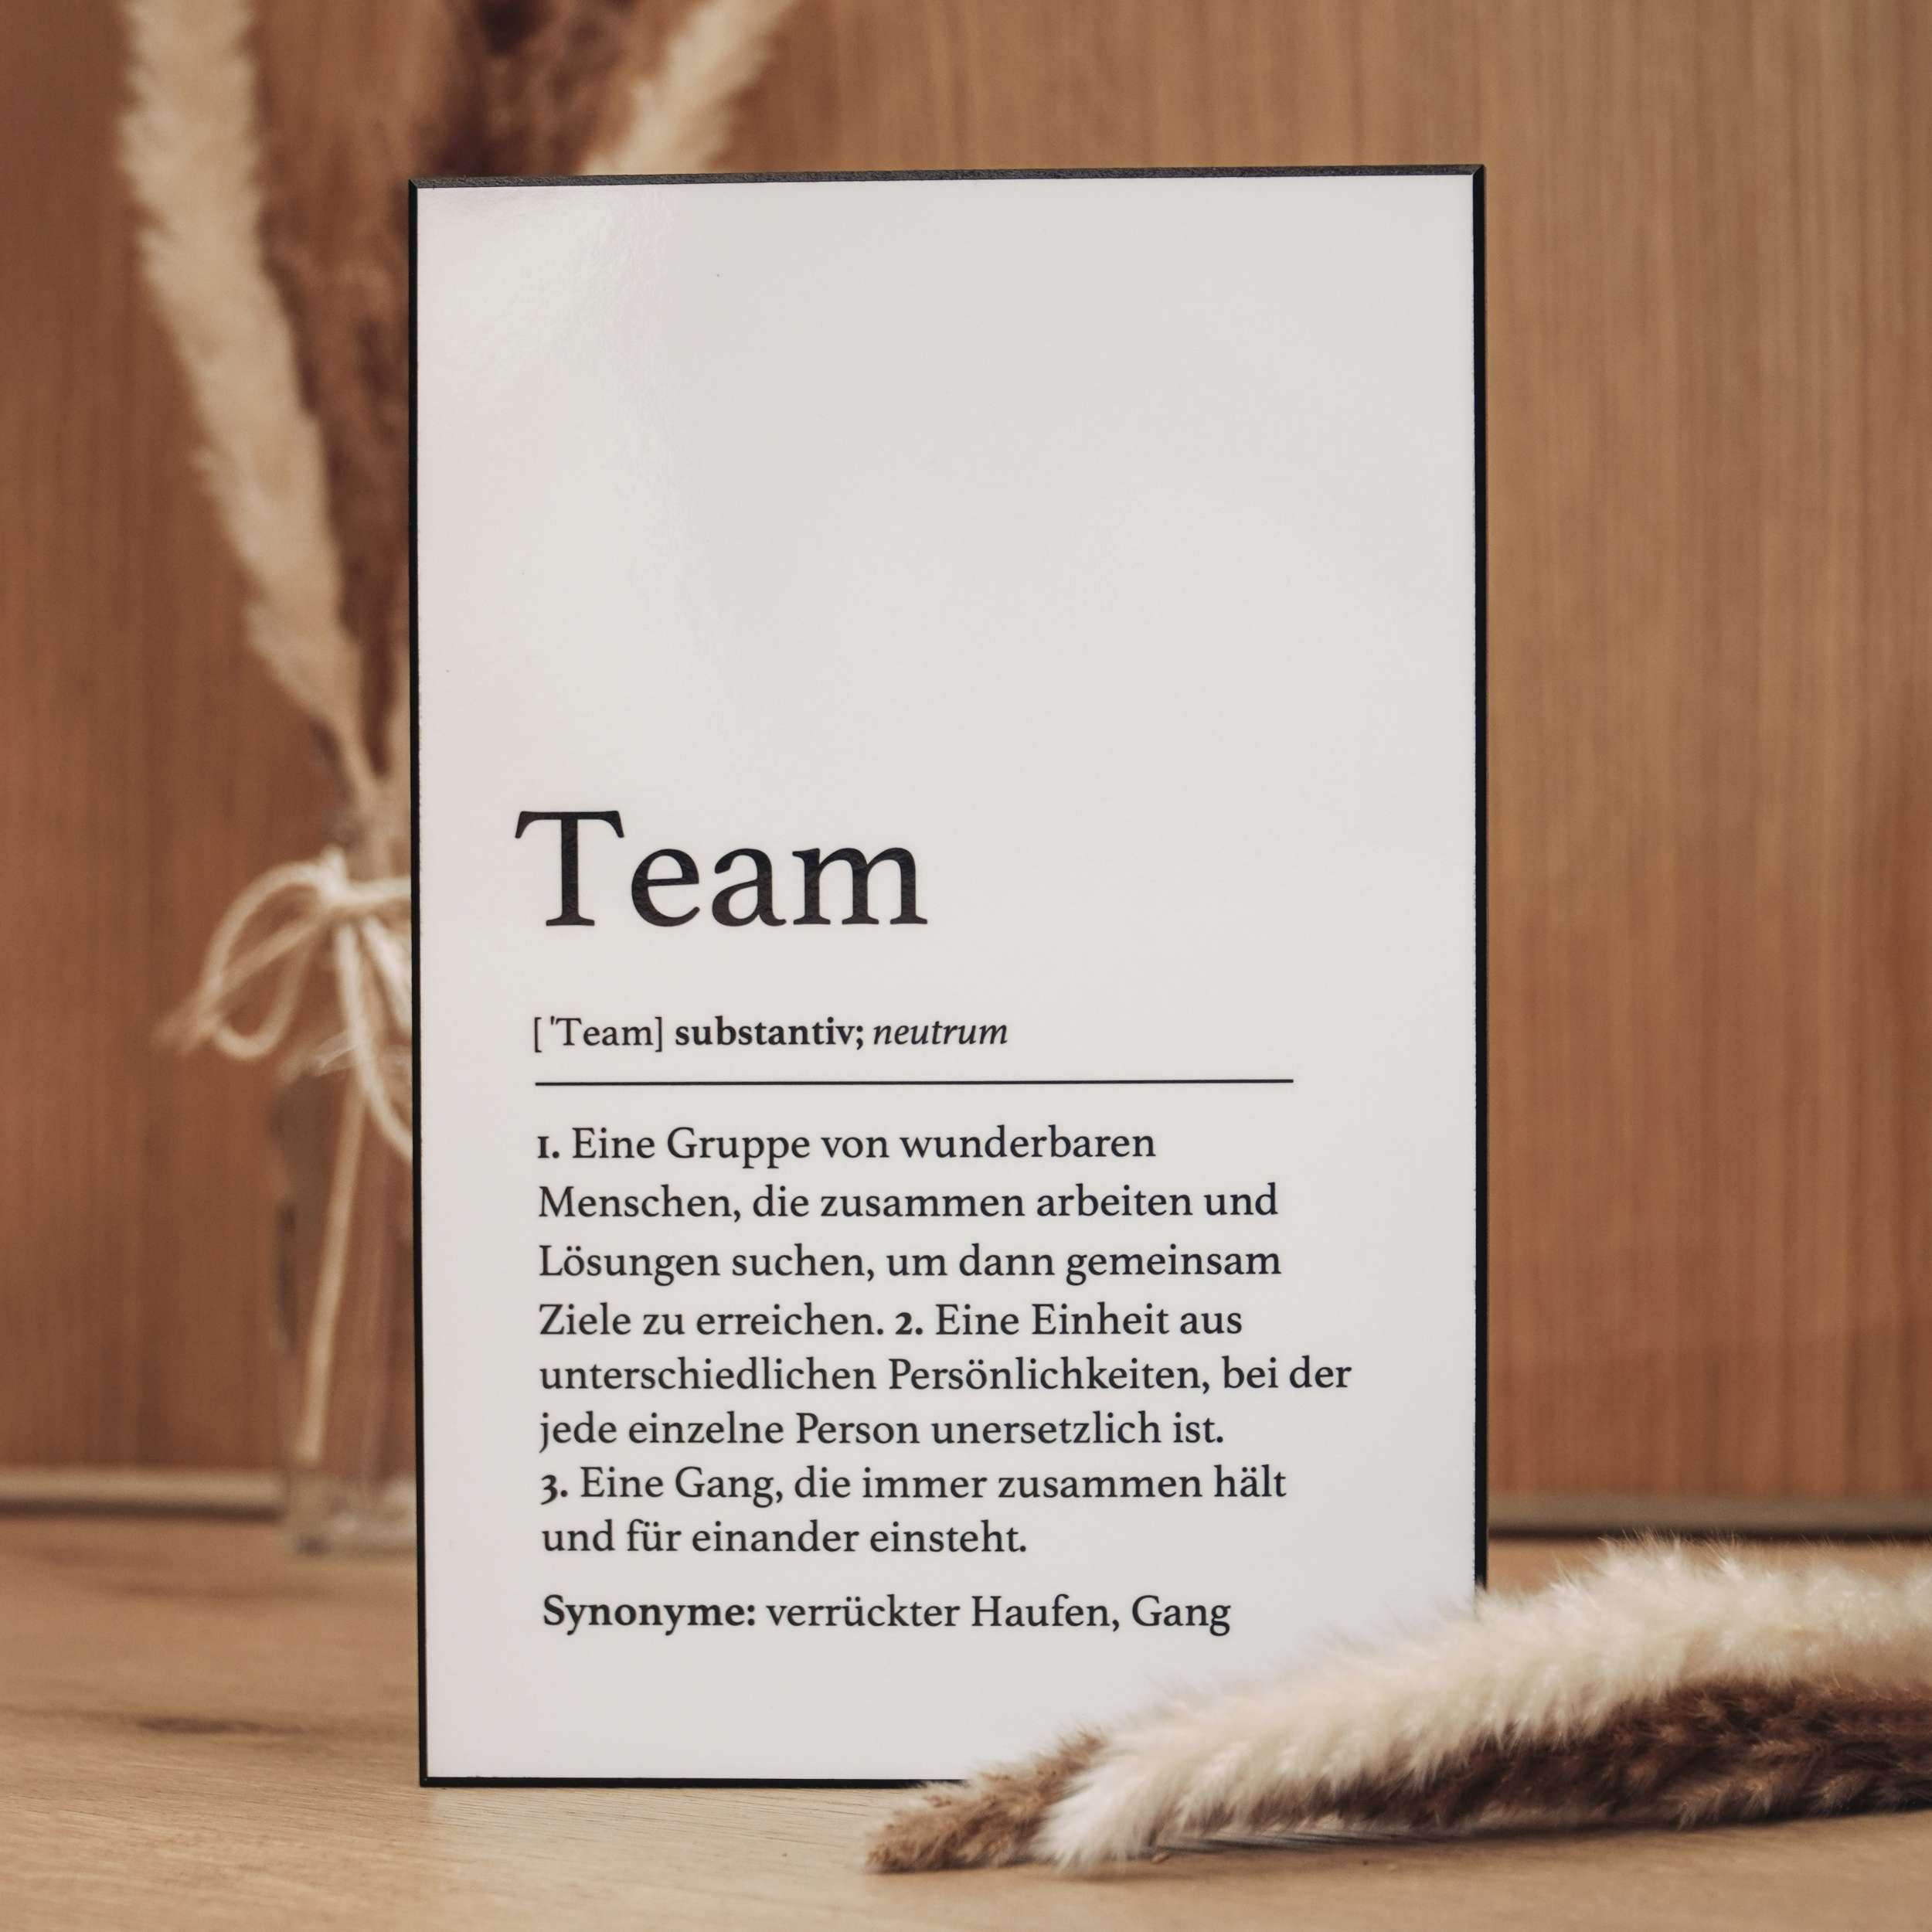 Handgefertigte Definitionstafel „Team“ aus erstklassigem Material – das ideale Geschenk fürs Büro oder geschätzte Menschen.